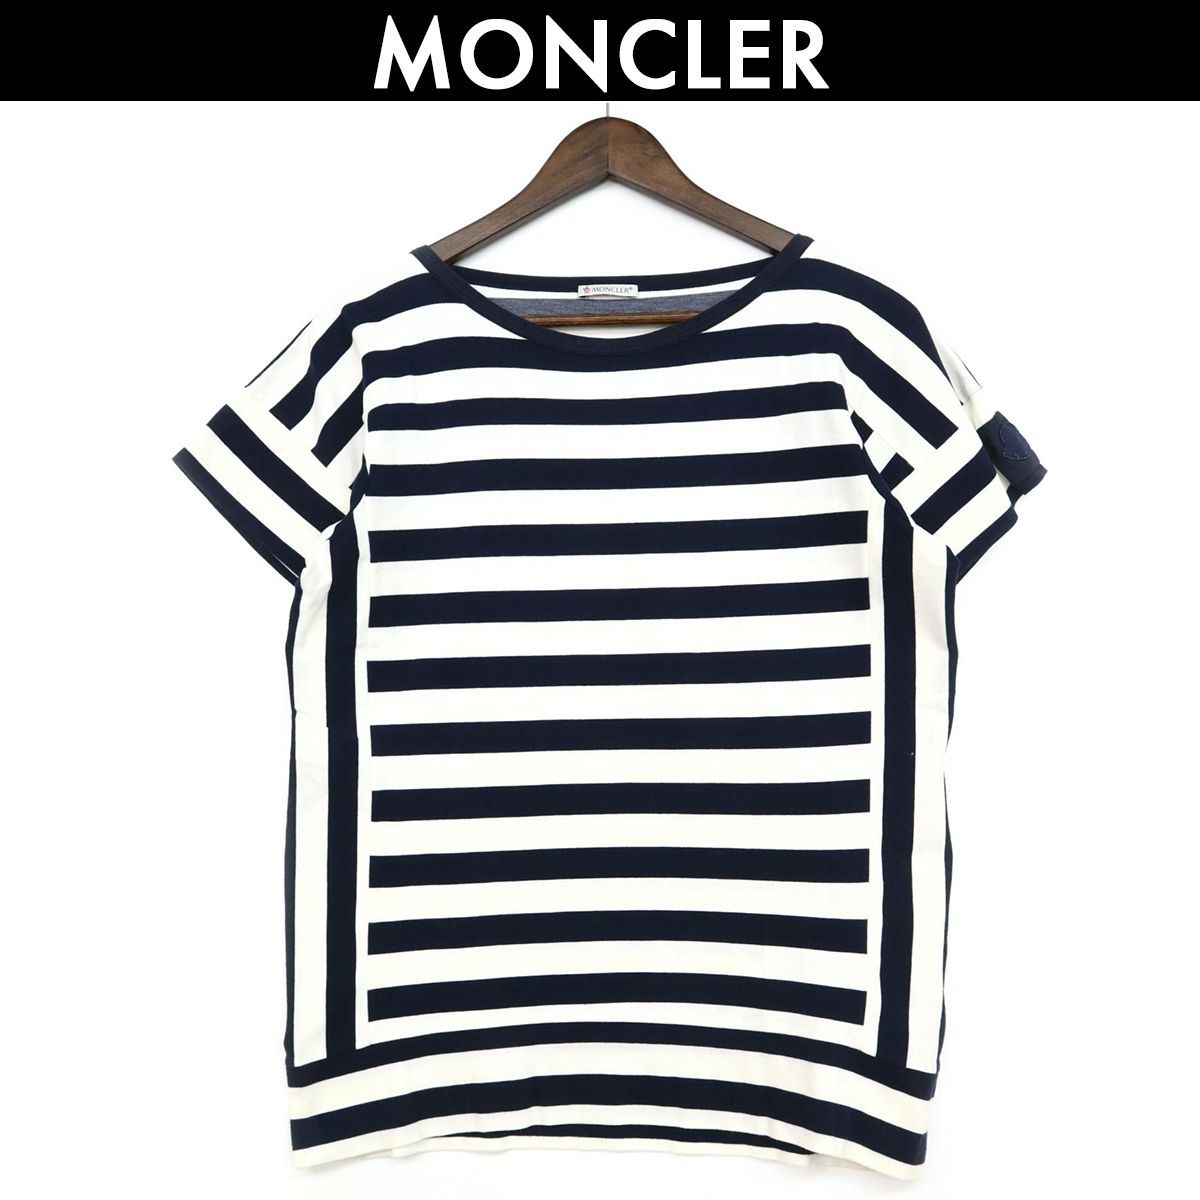 モンクレール MONCLER ボーダー Tシャツ ネイビー MAGLIA GIROCOLLO メンズ 中古 サイズ 表記なし コンディション C